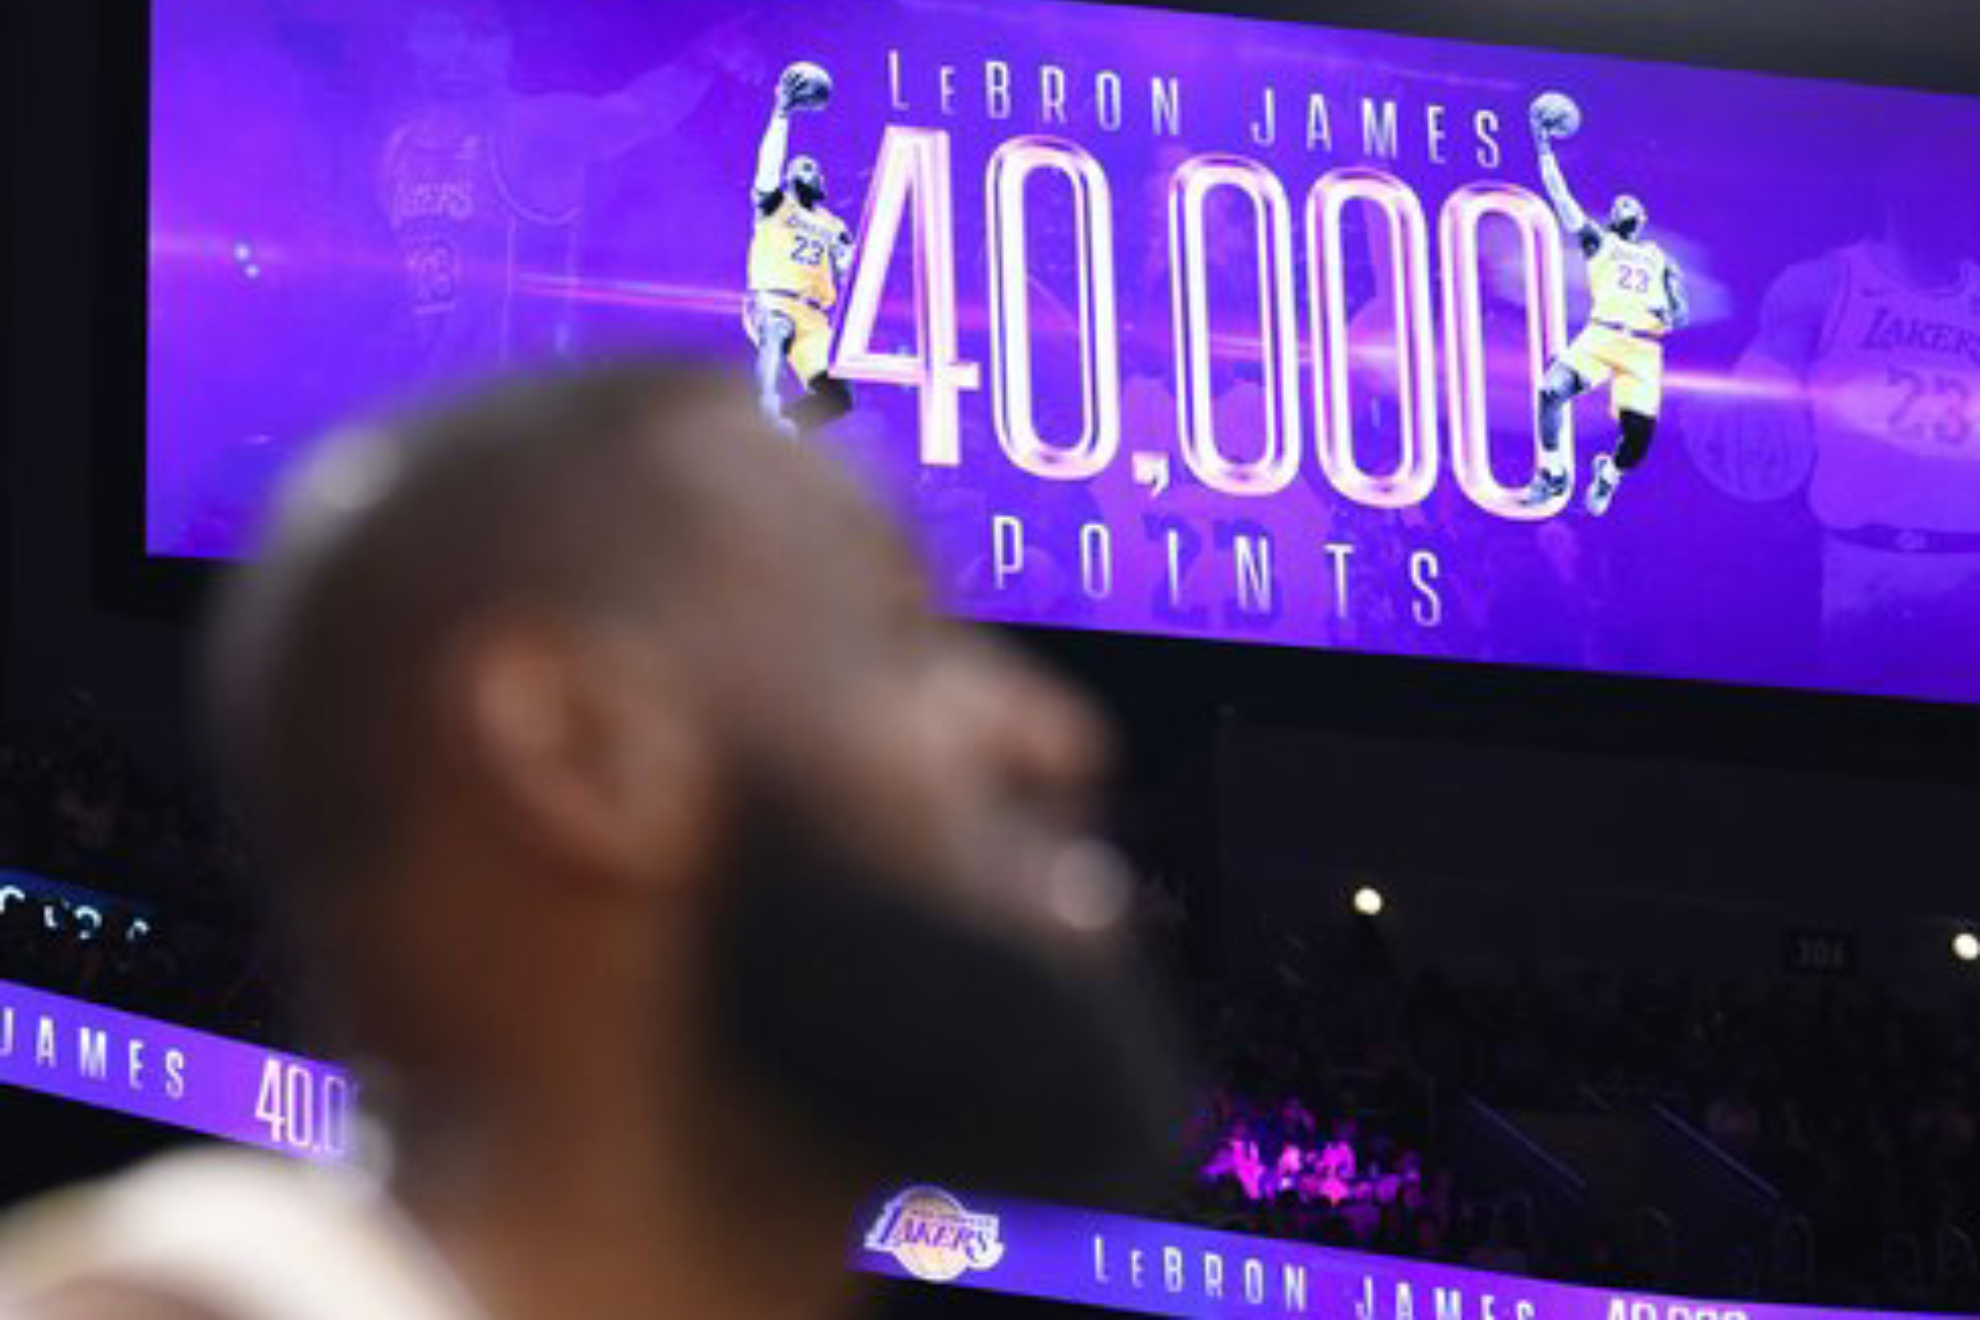 LeBron James, ante una imagen en el v�deomarcador anunciando su puntos 40.000 en la NBA.